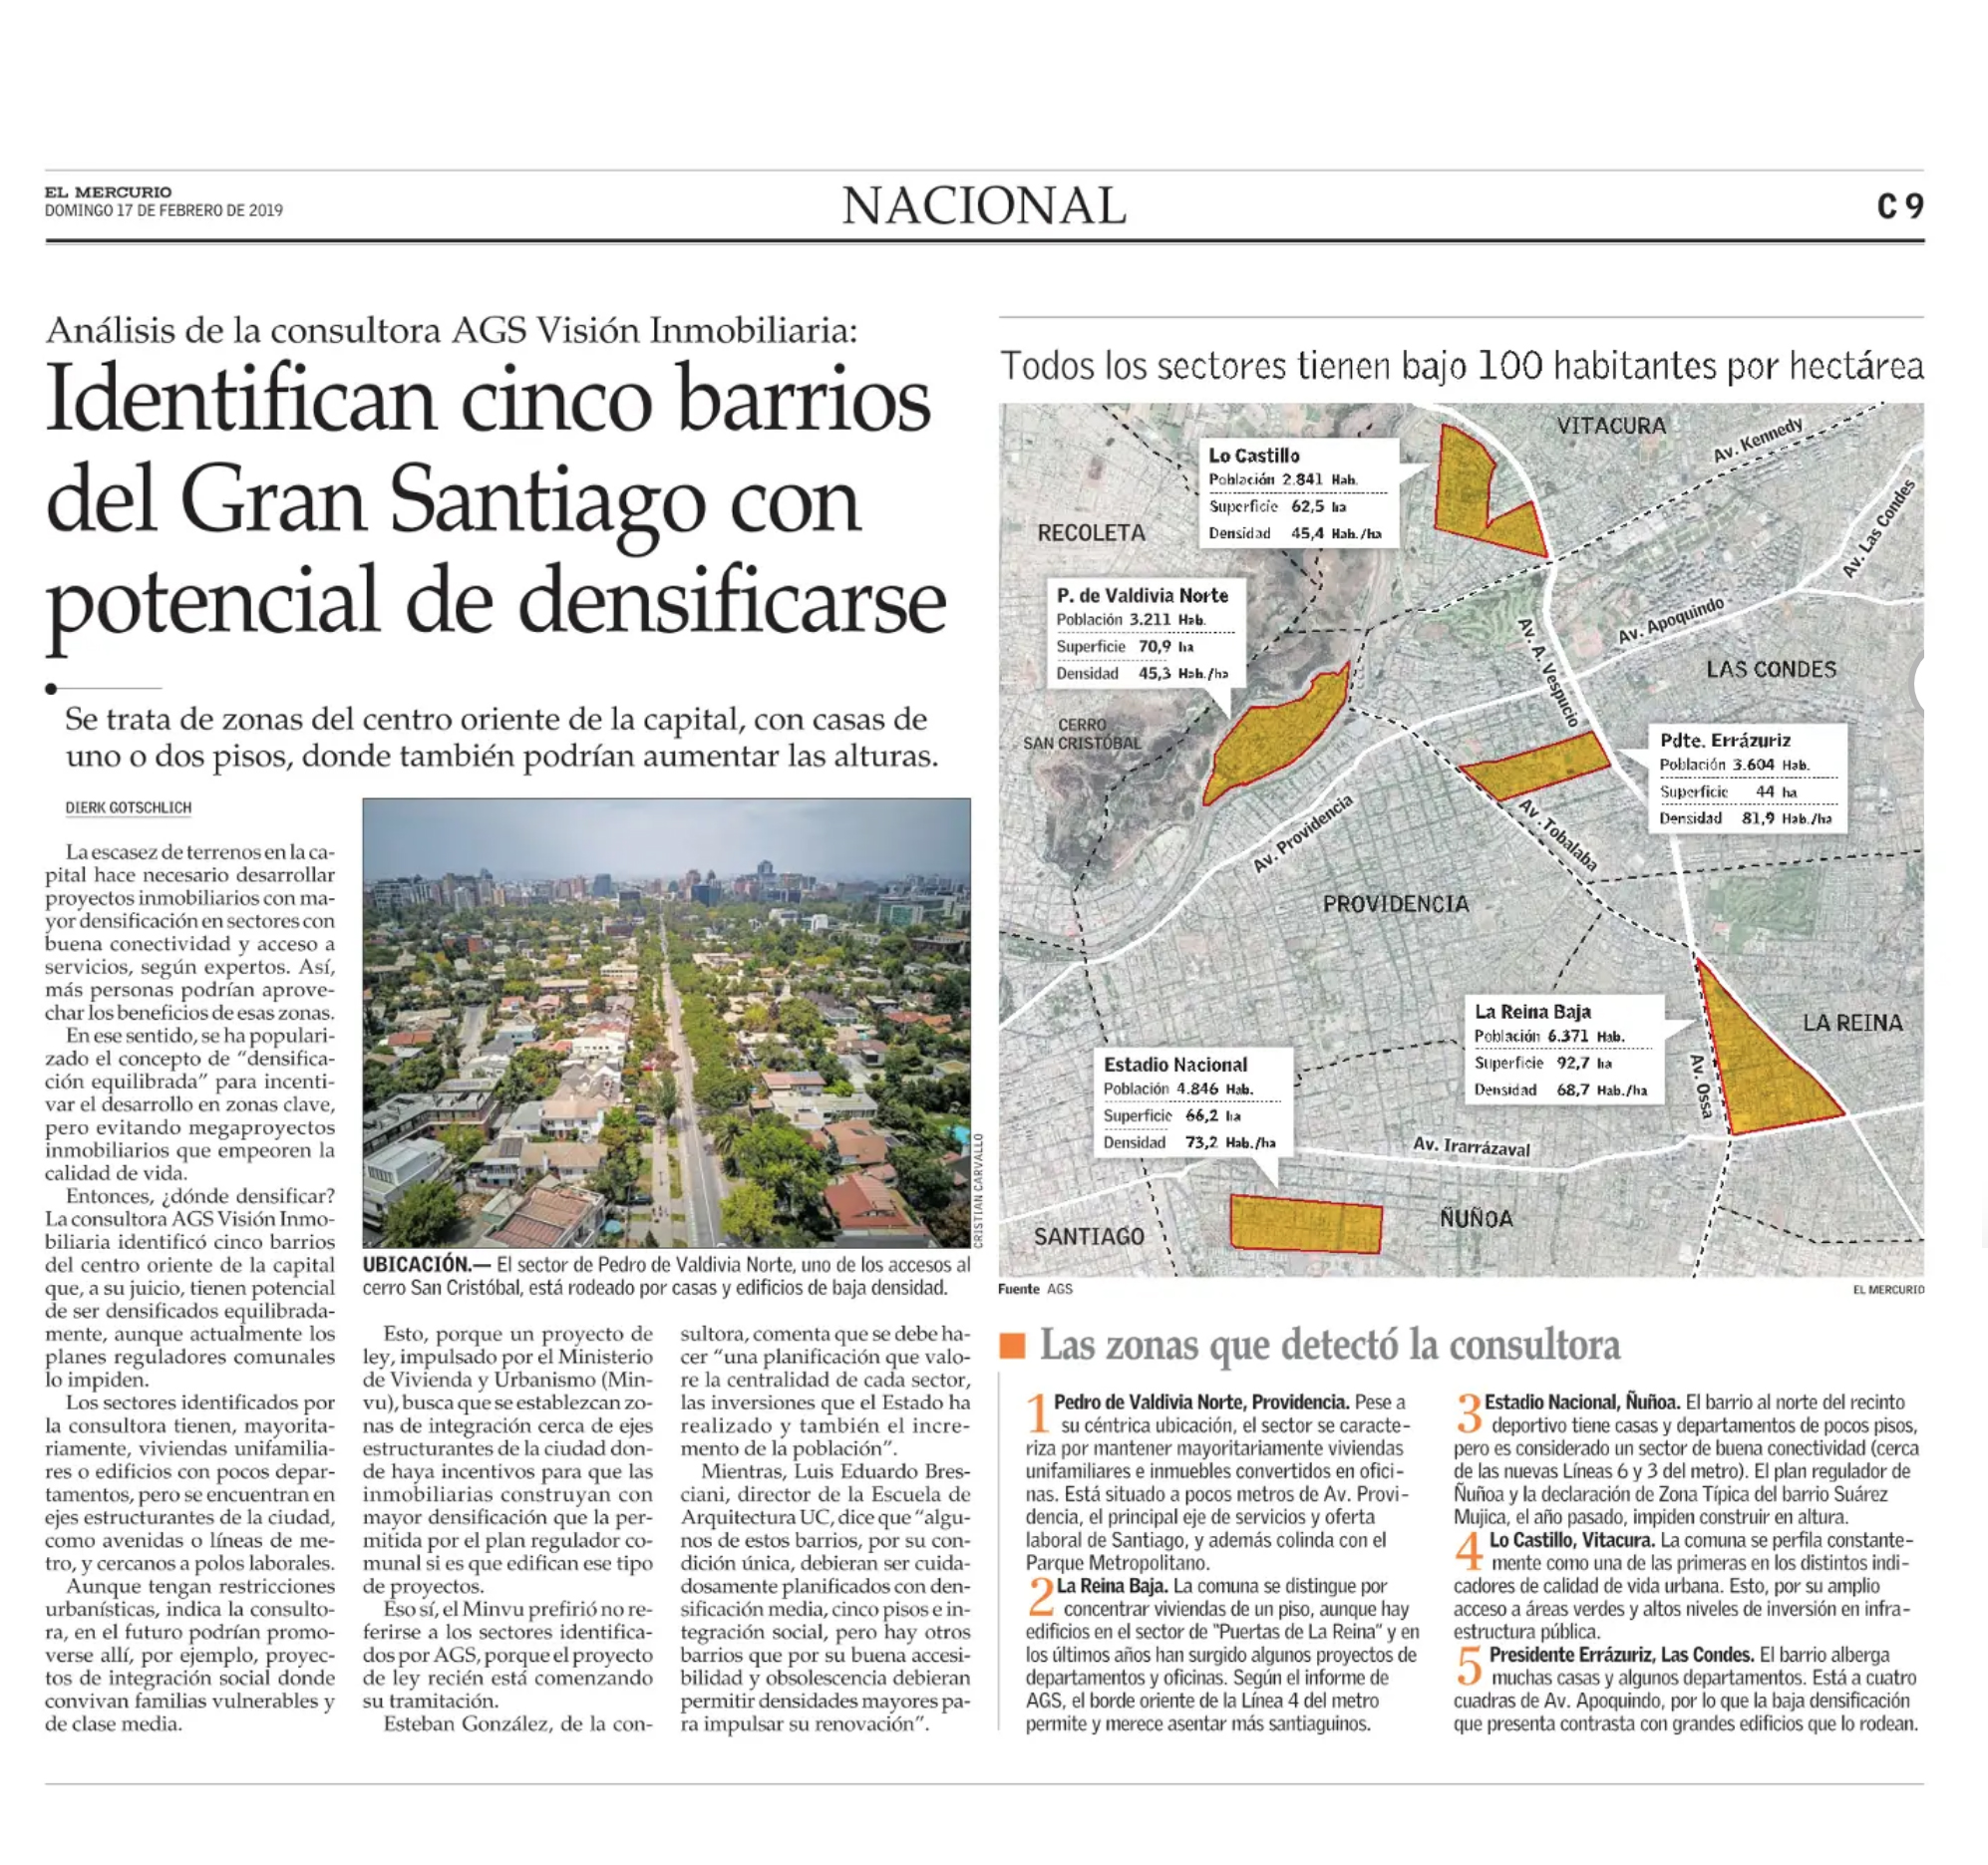 19-02-17_Luis_Eduardo_Bresciani_L.__Identifican_cinco_barrios_del_Gran_Santiago_con_potencial_de_densificarse.jpg